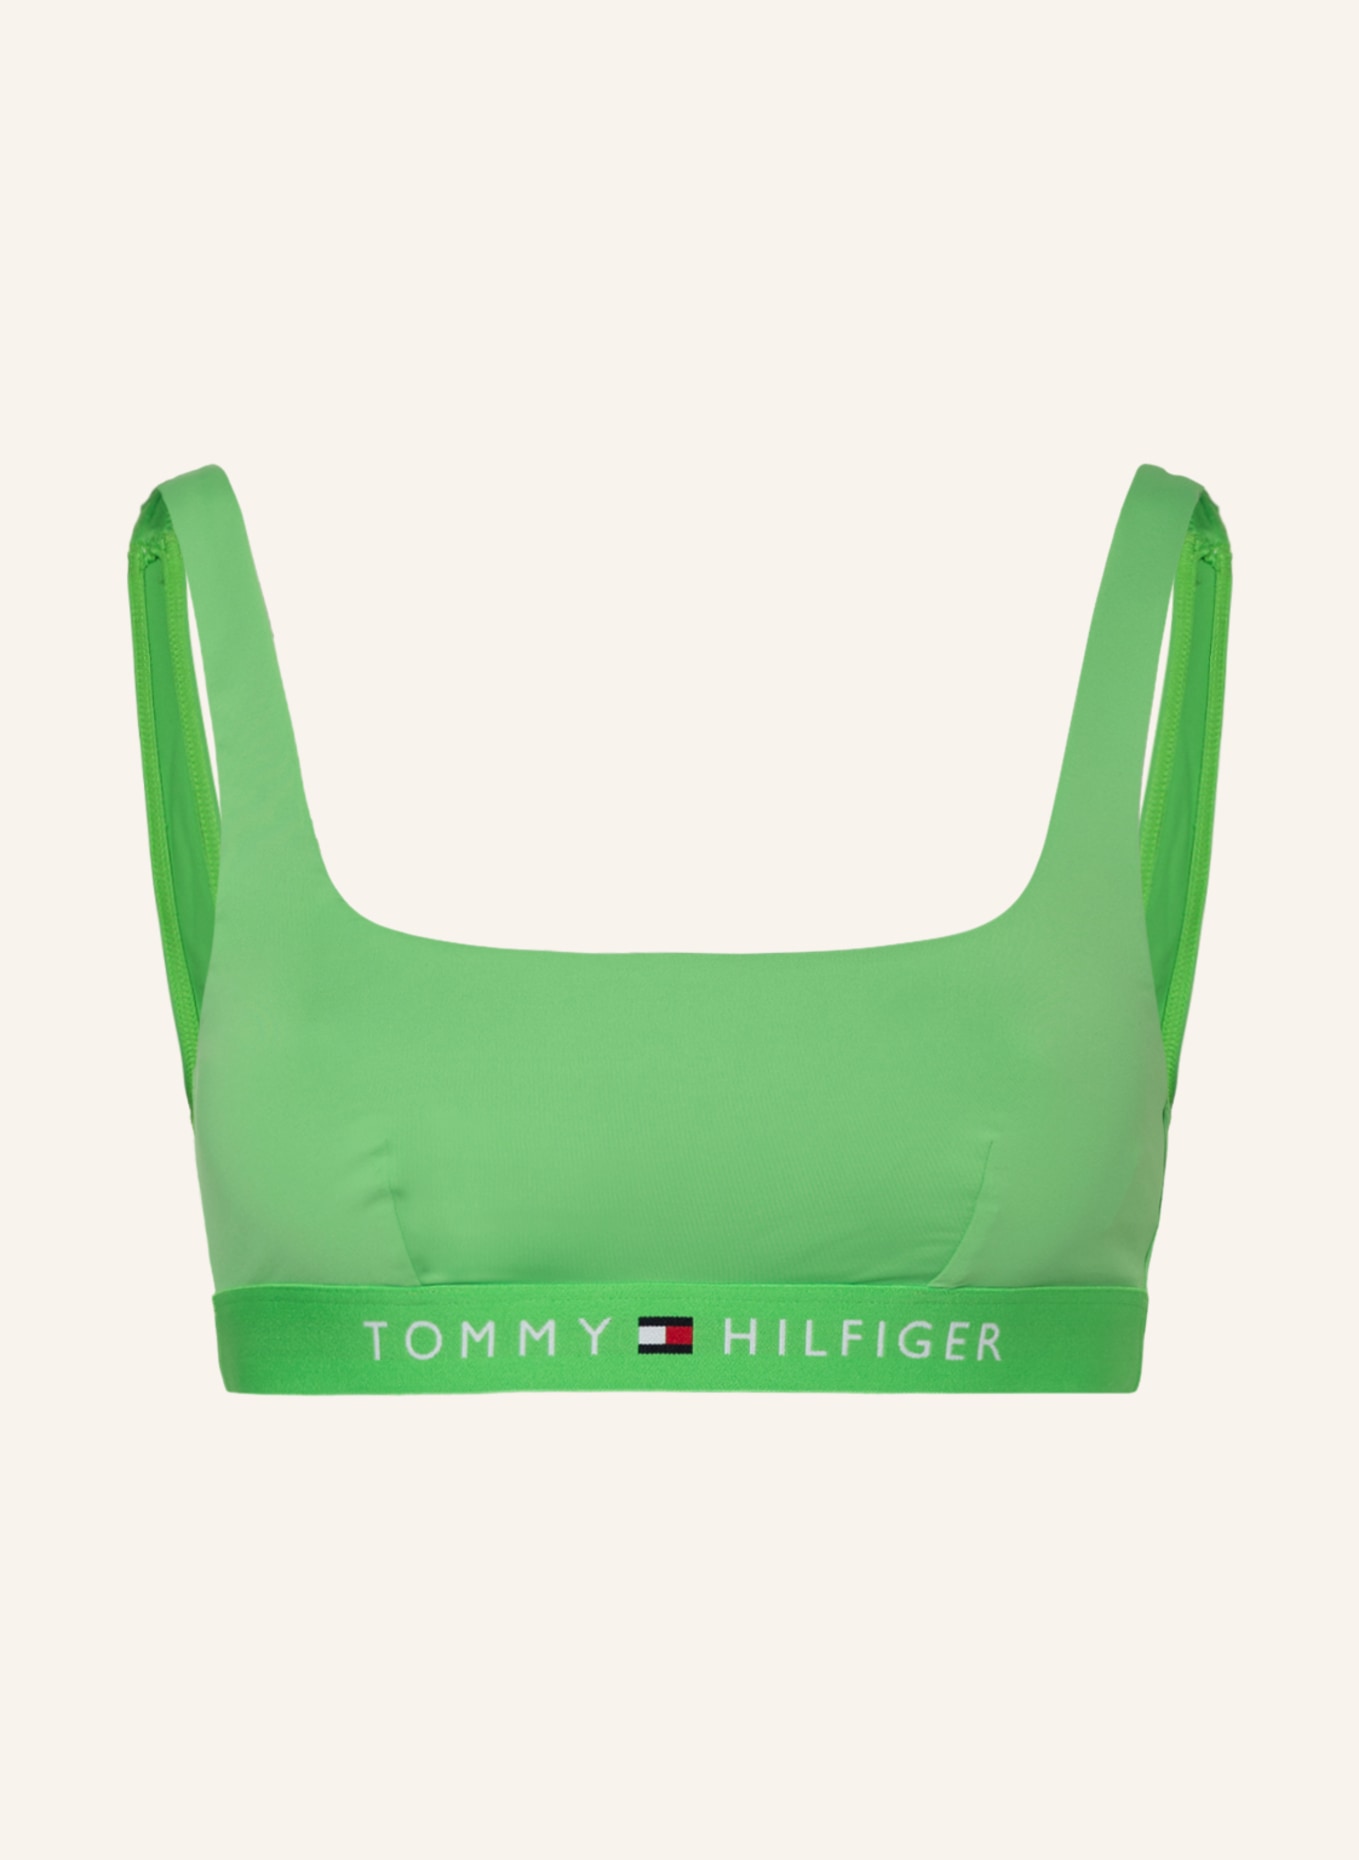 TOMMY HILFIGER Bustier-Bikini-Top, Farbe: HELLGRÜN (Bild 1)